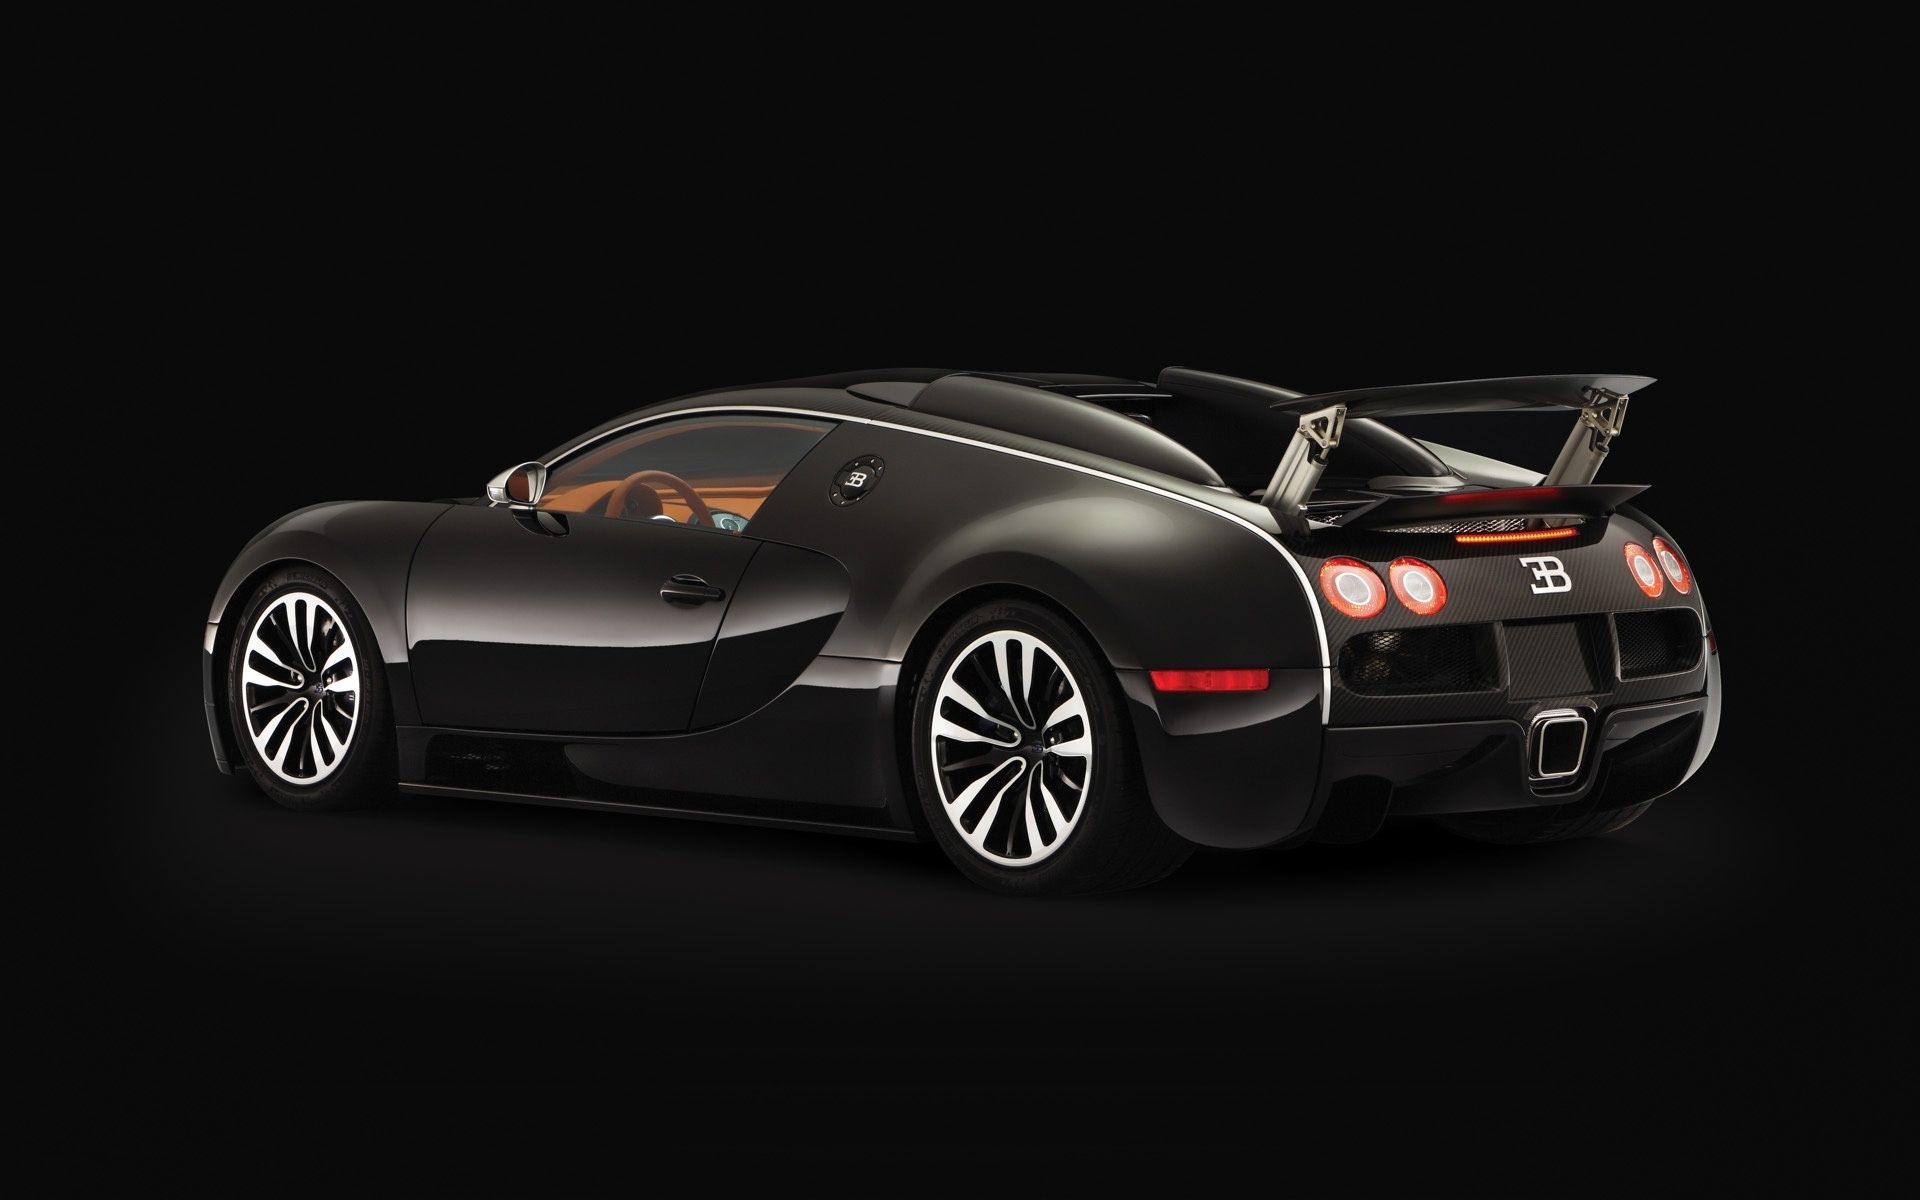 Bugatti Veyron Sang Noir 2008 - Rear Angle for 1920 x 1200 widescreen resolution